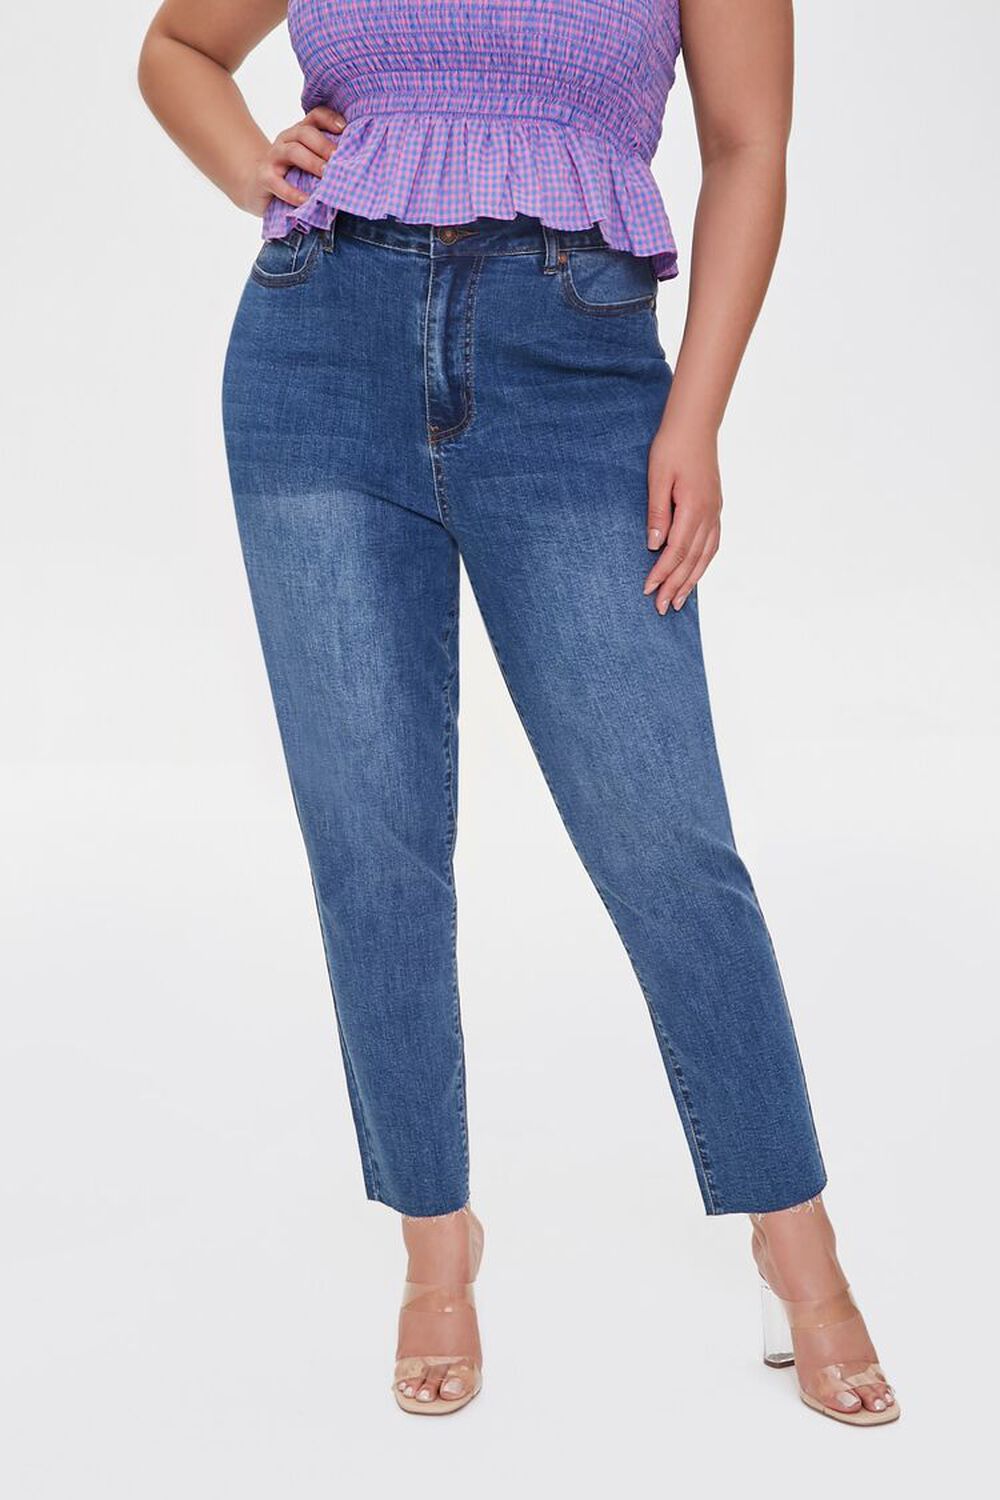 DARK DENIM Plus Size Signature High-Rise Mom Jeans, image 2